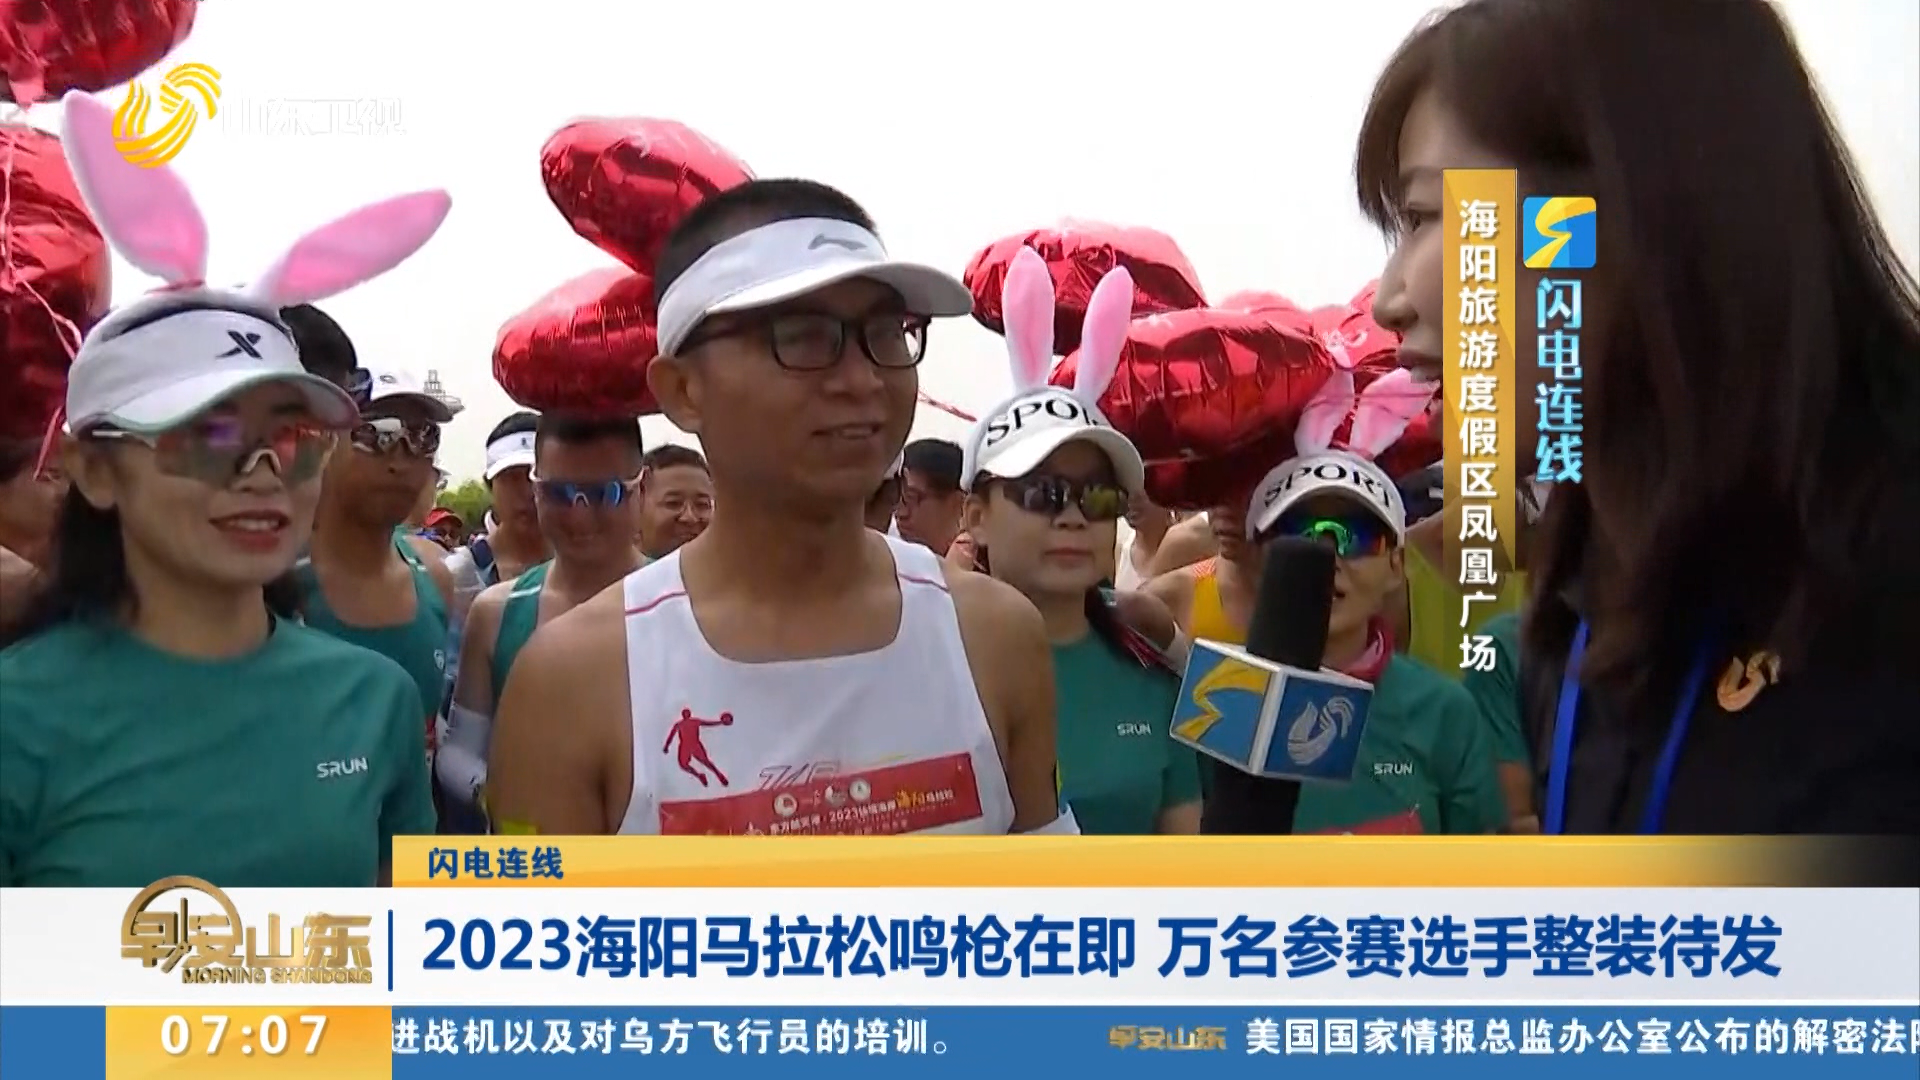 【闪电连线】2023海阳马拉松鸣枪在即 万名参赛选手整装待发